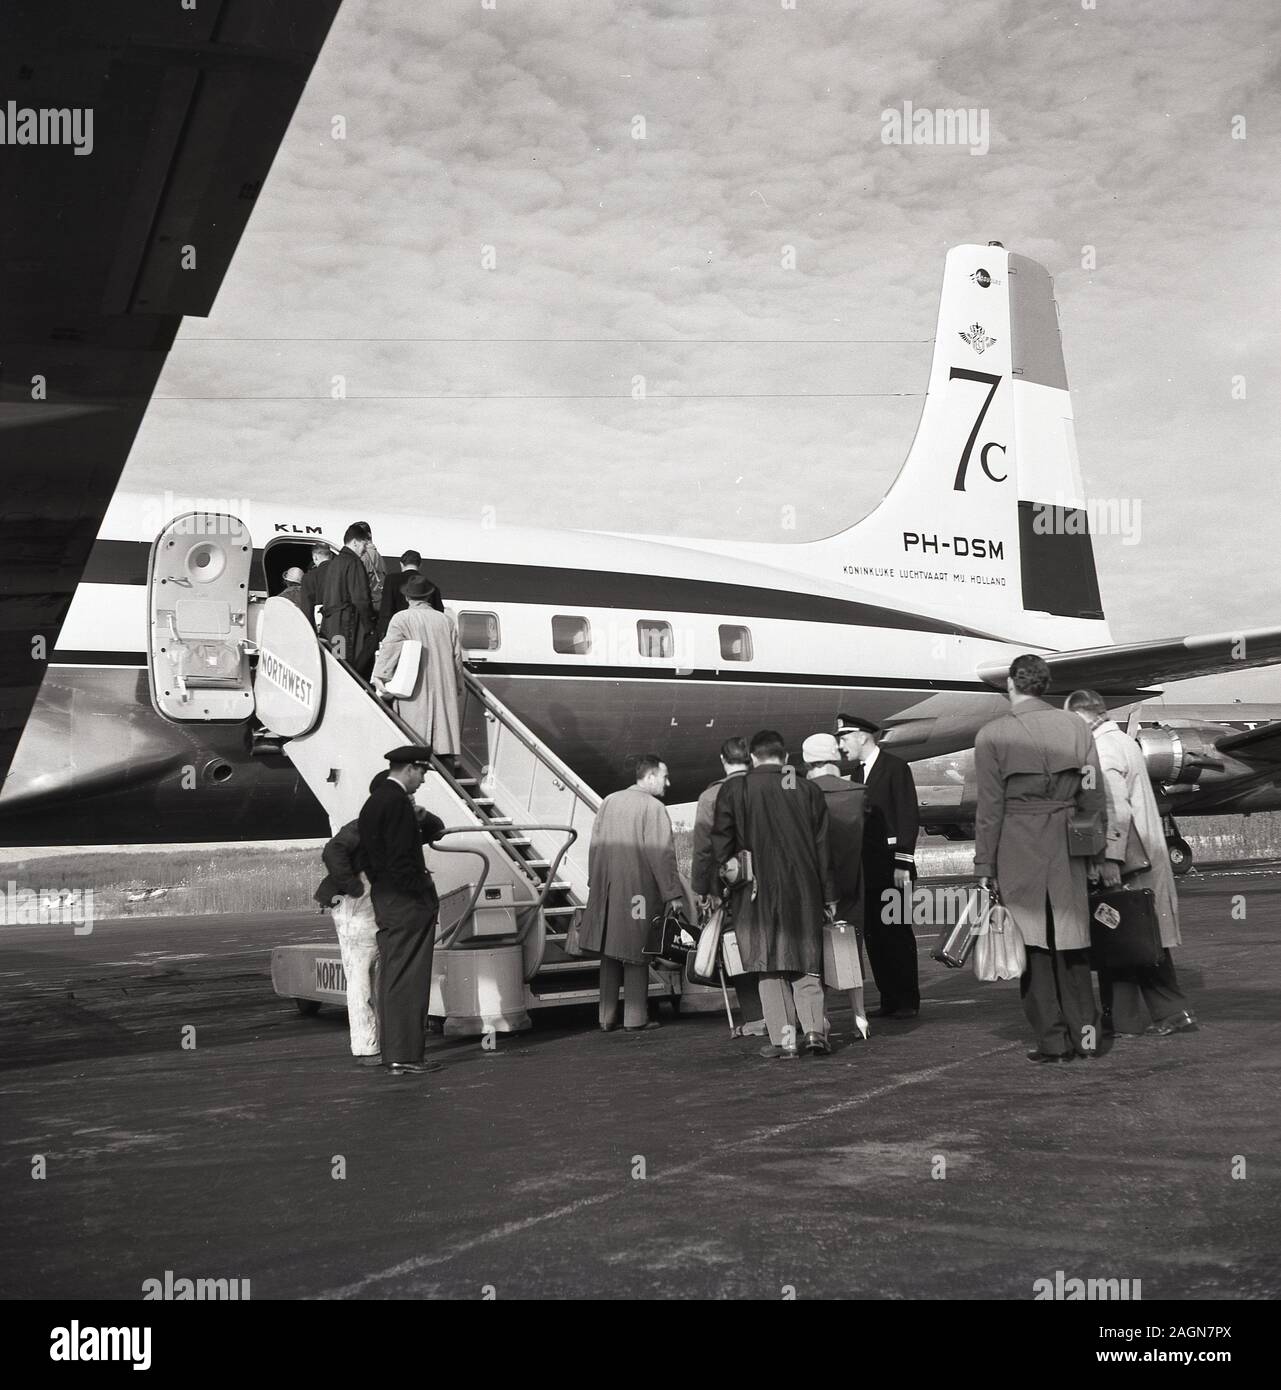 1950s, historische Passagiere, die an Bord eines Dougas DC-7C KLM-Flugzeugs am Flughafen von Anchorage, Alaska, USA, gehen. Die 1956 eingeführte DC-7C (Seven Seas) war eine Variante mit erweiterter Reichweite des ursprünglichen DC-7-Flugzeugs, mit verbesserten Motoren und zusätzlicher Kraftstoffkapazität, was ihr eine durchnon-stop transatlantische Kapazität verleiht und um europäische Fluggesellschaften anzuziehen wurde. Stockfoto